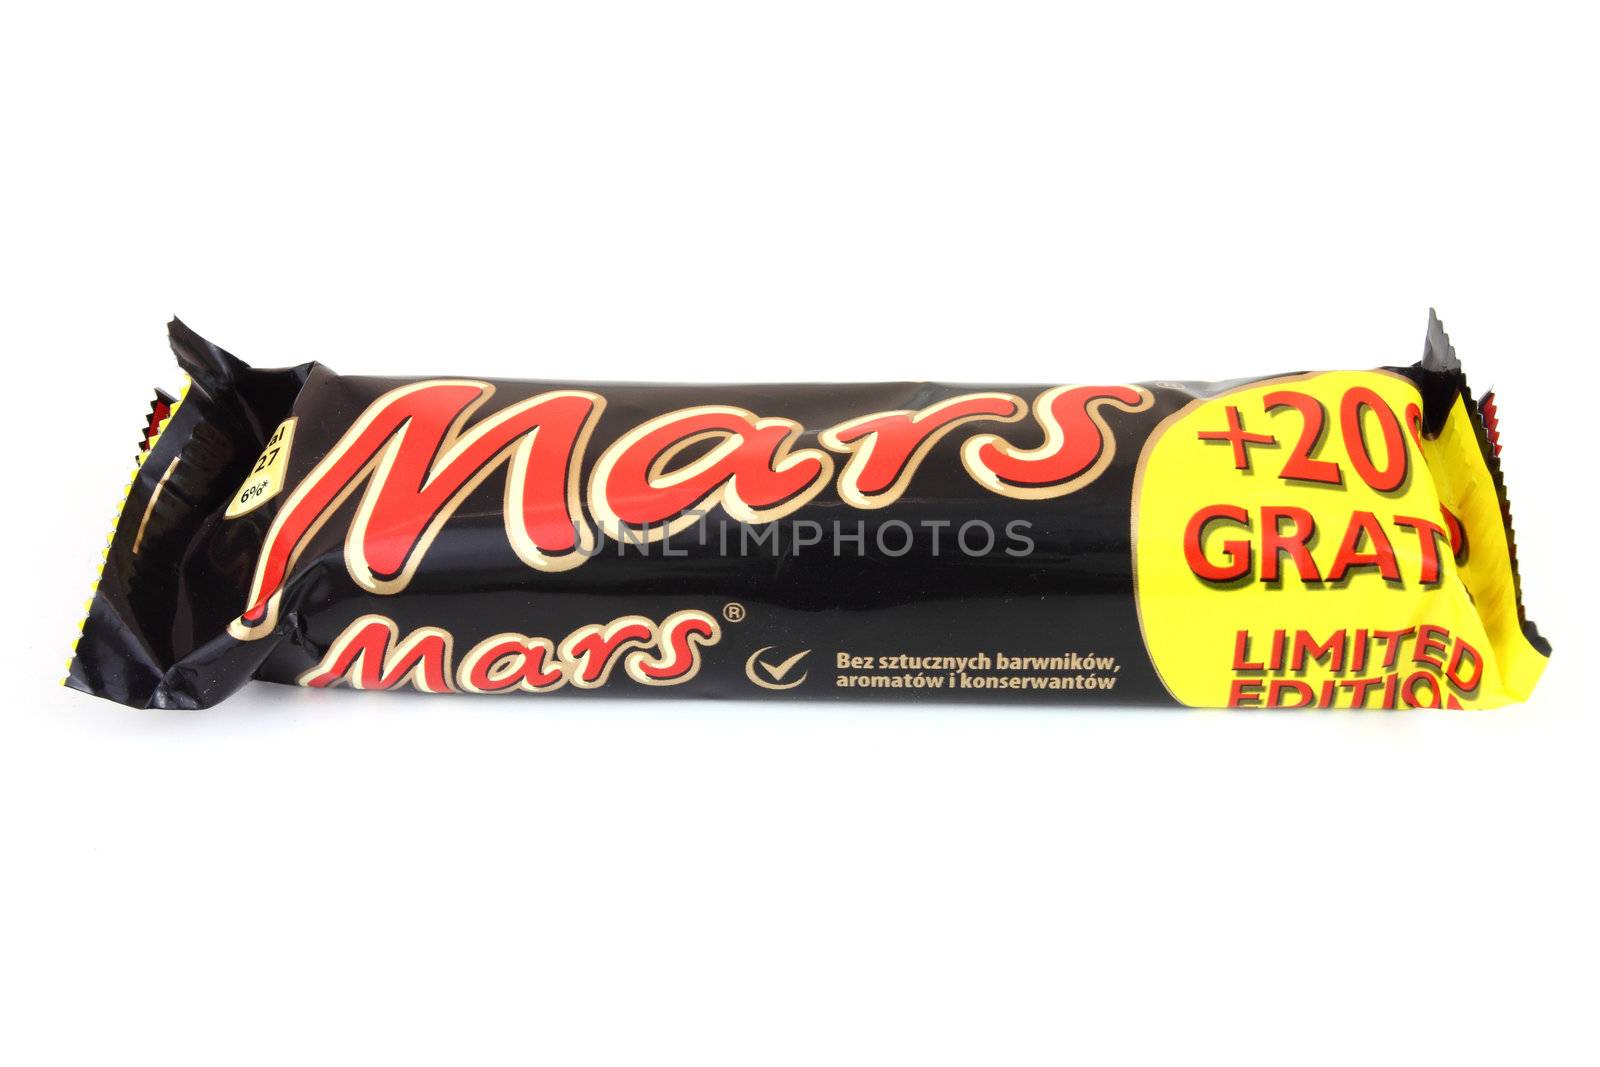 Mars candy bar by tupungato